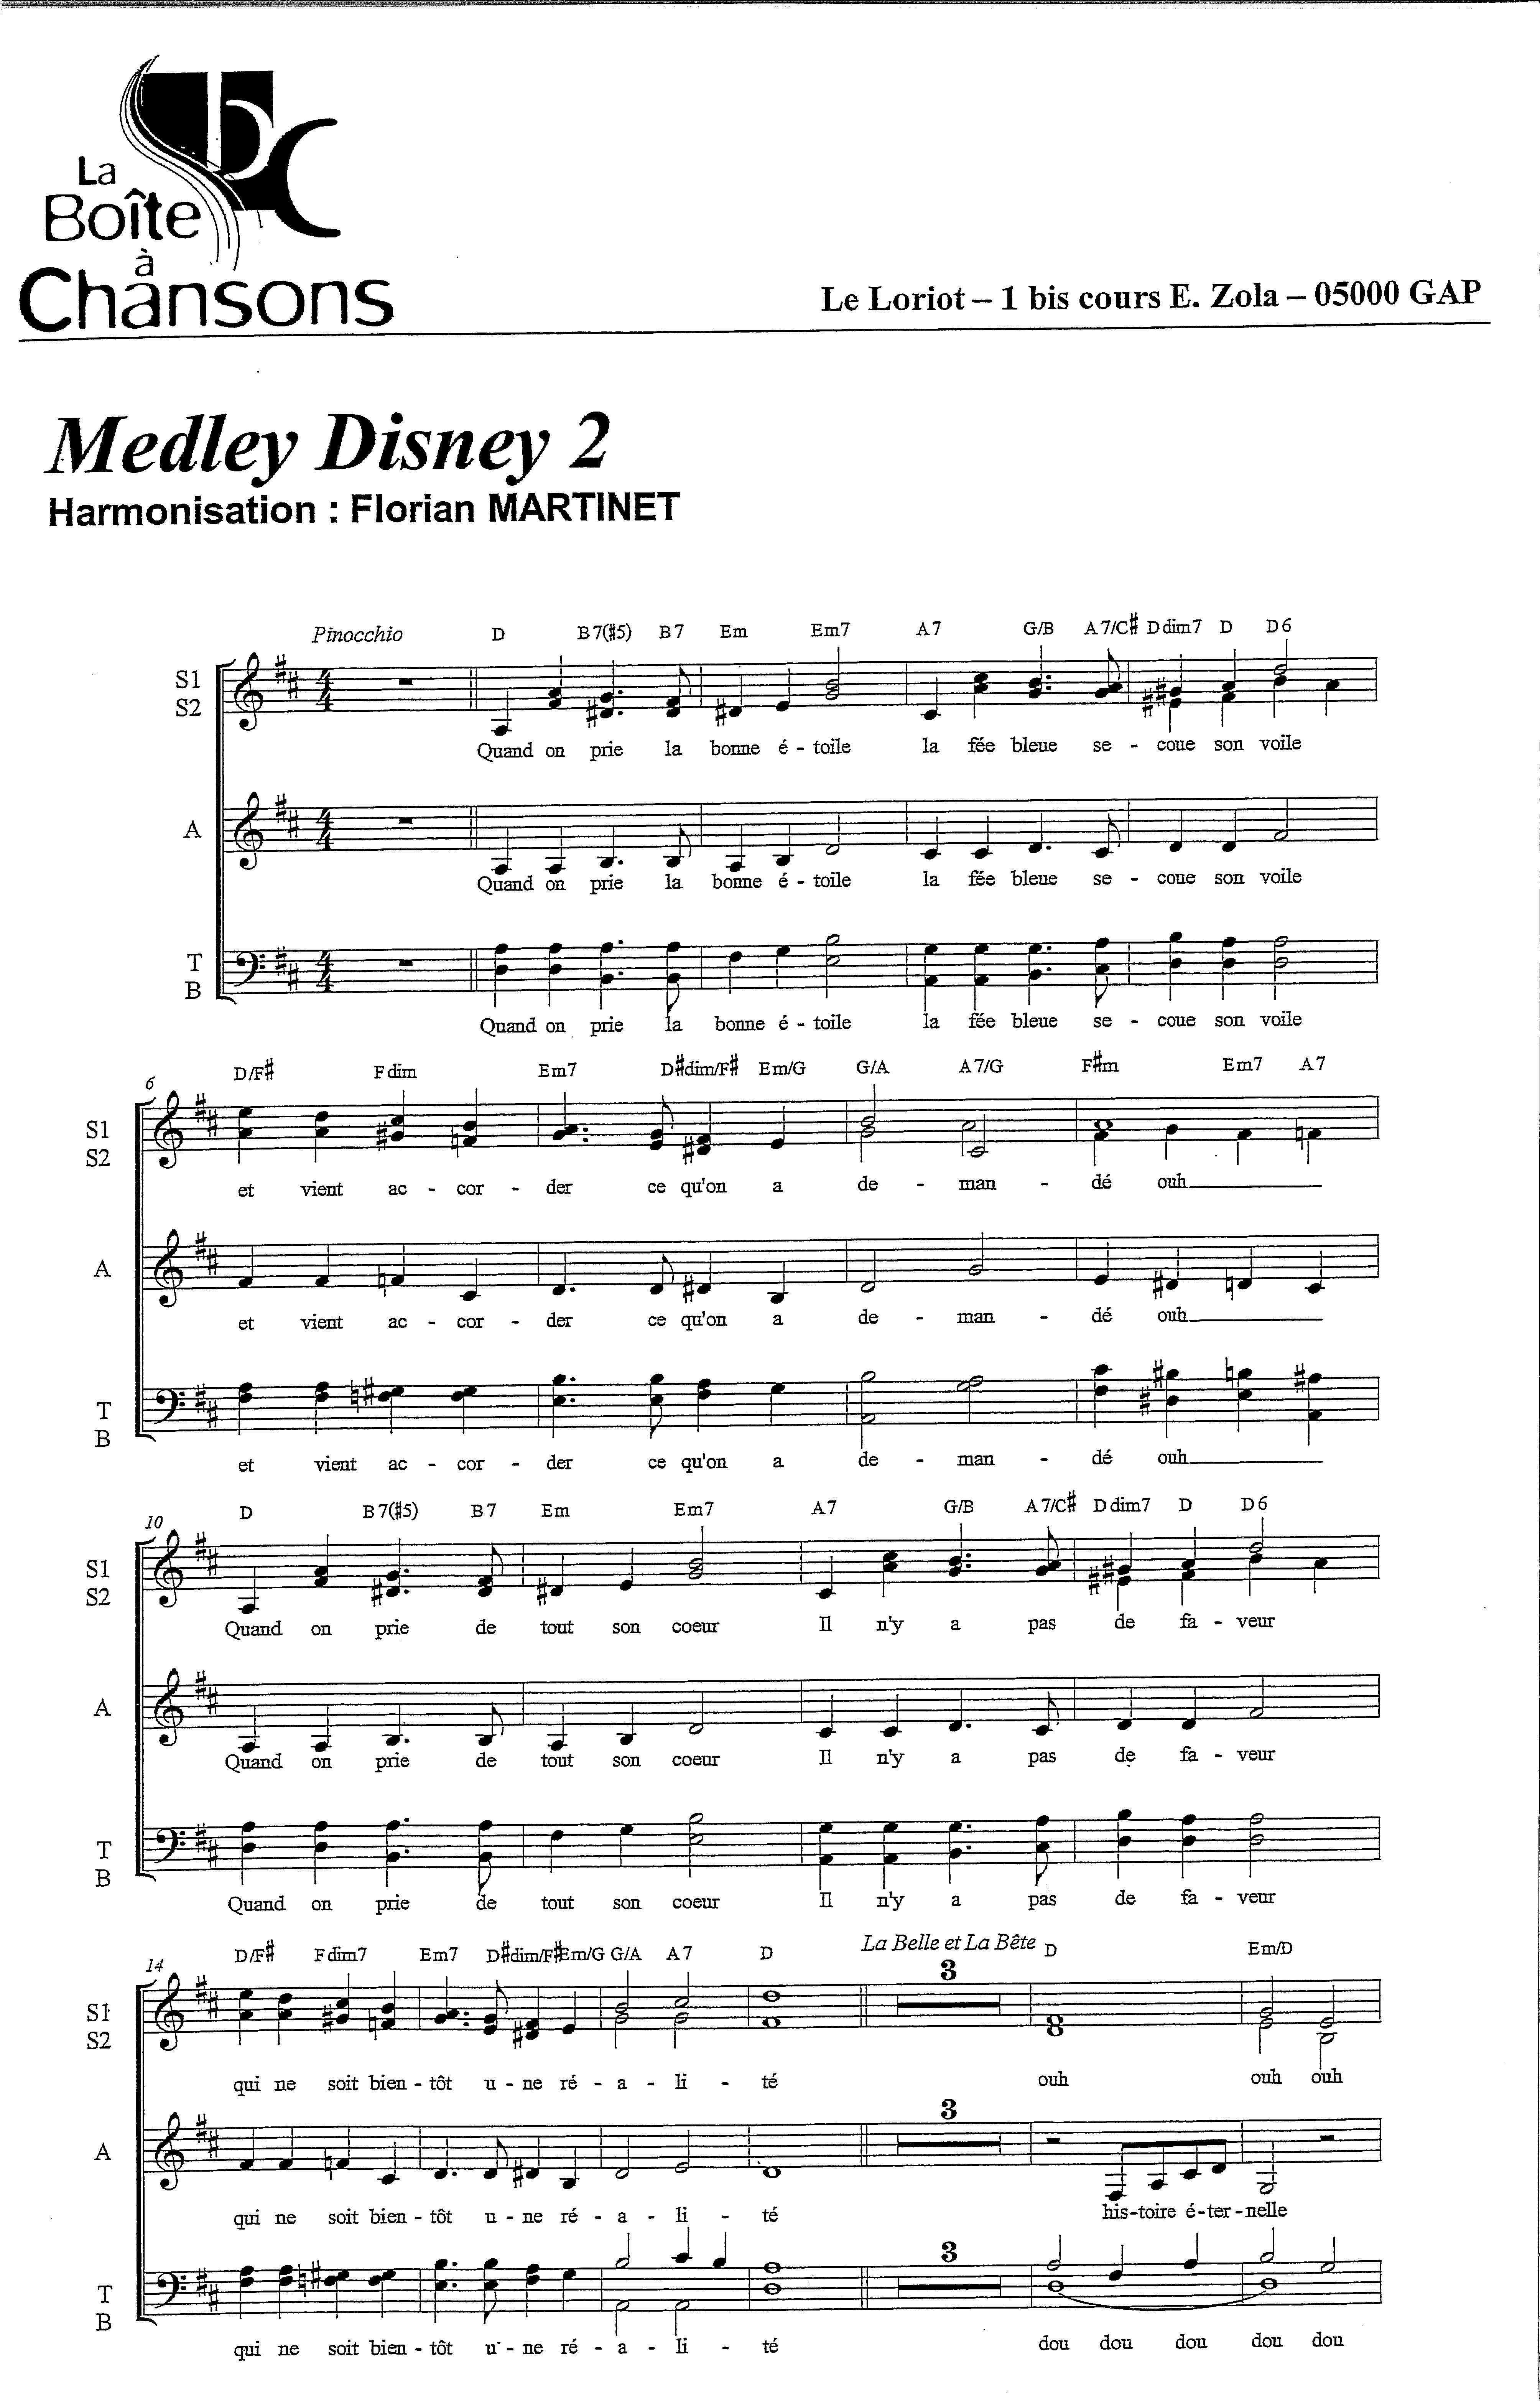 MEDLEY DISNEY 2